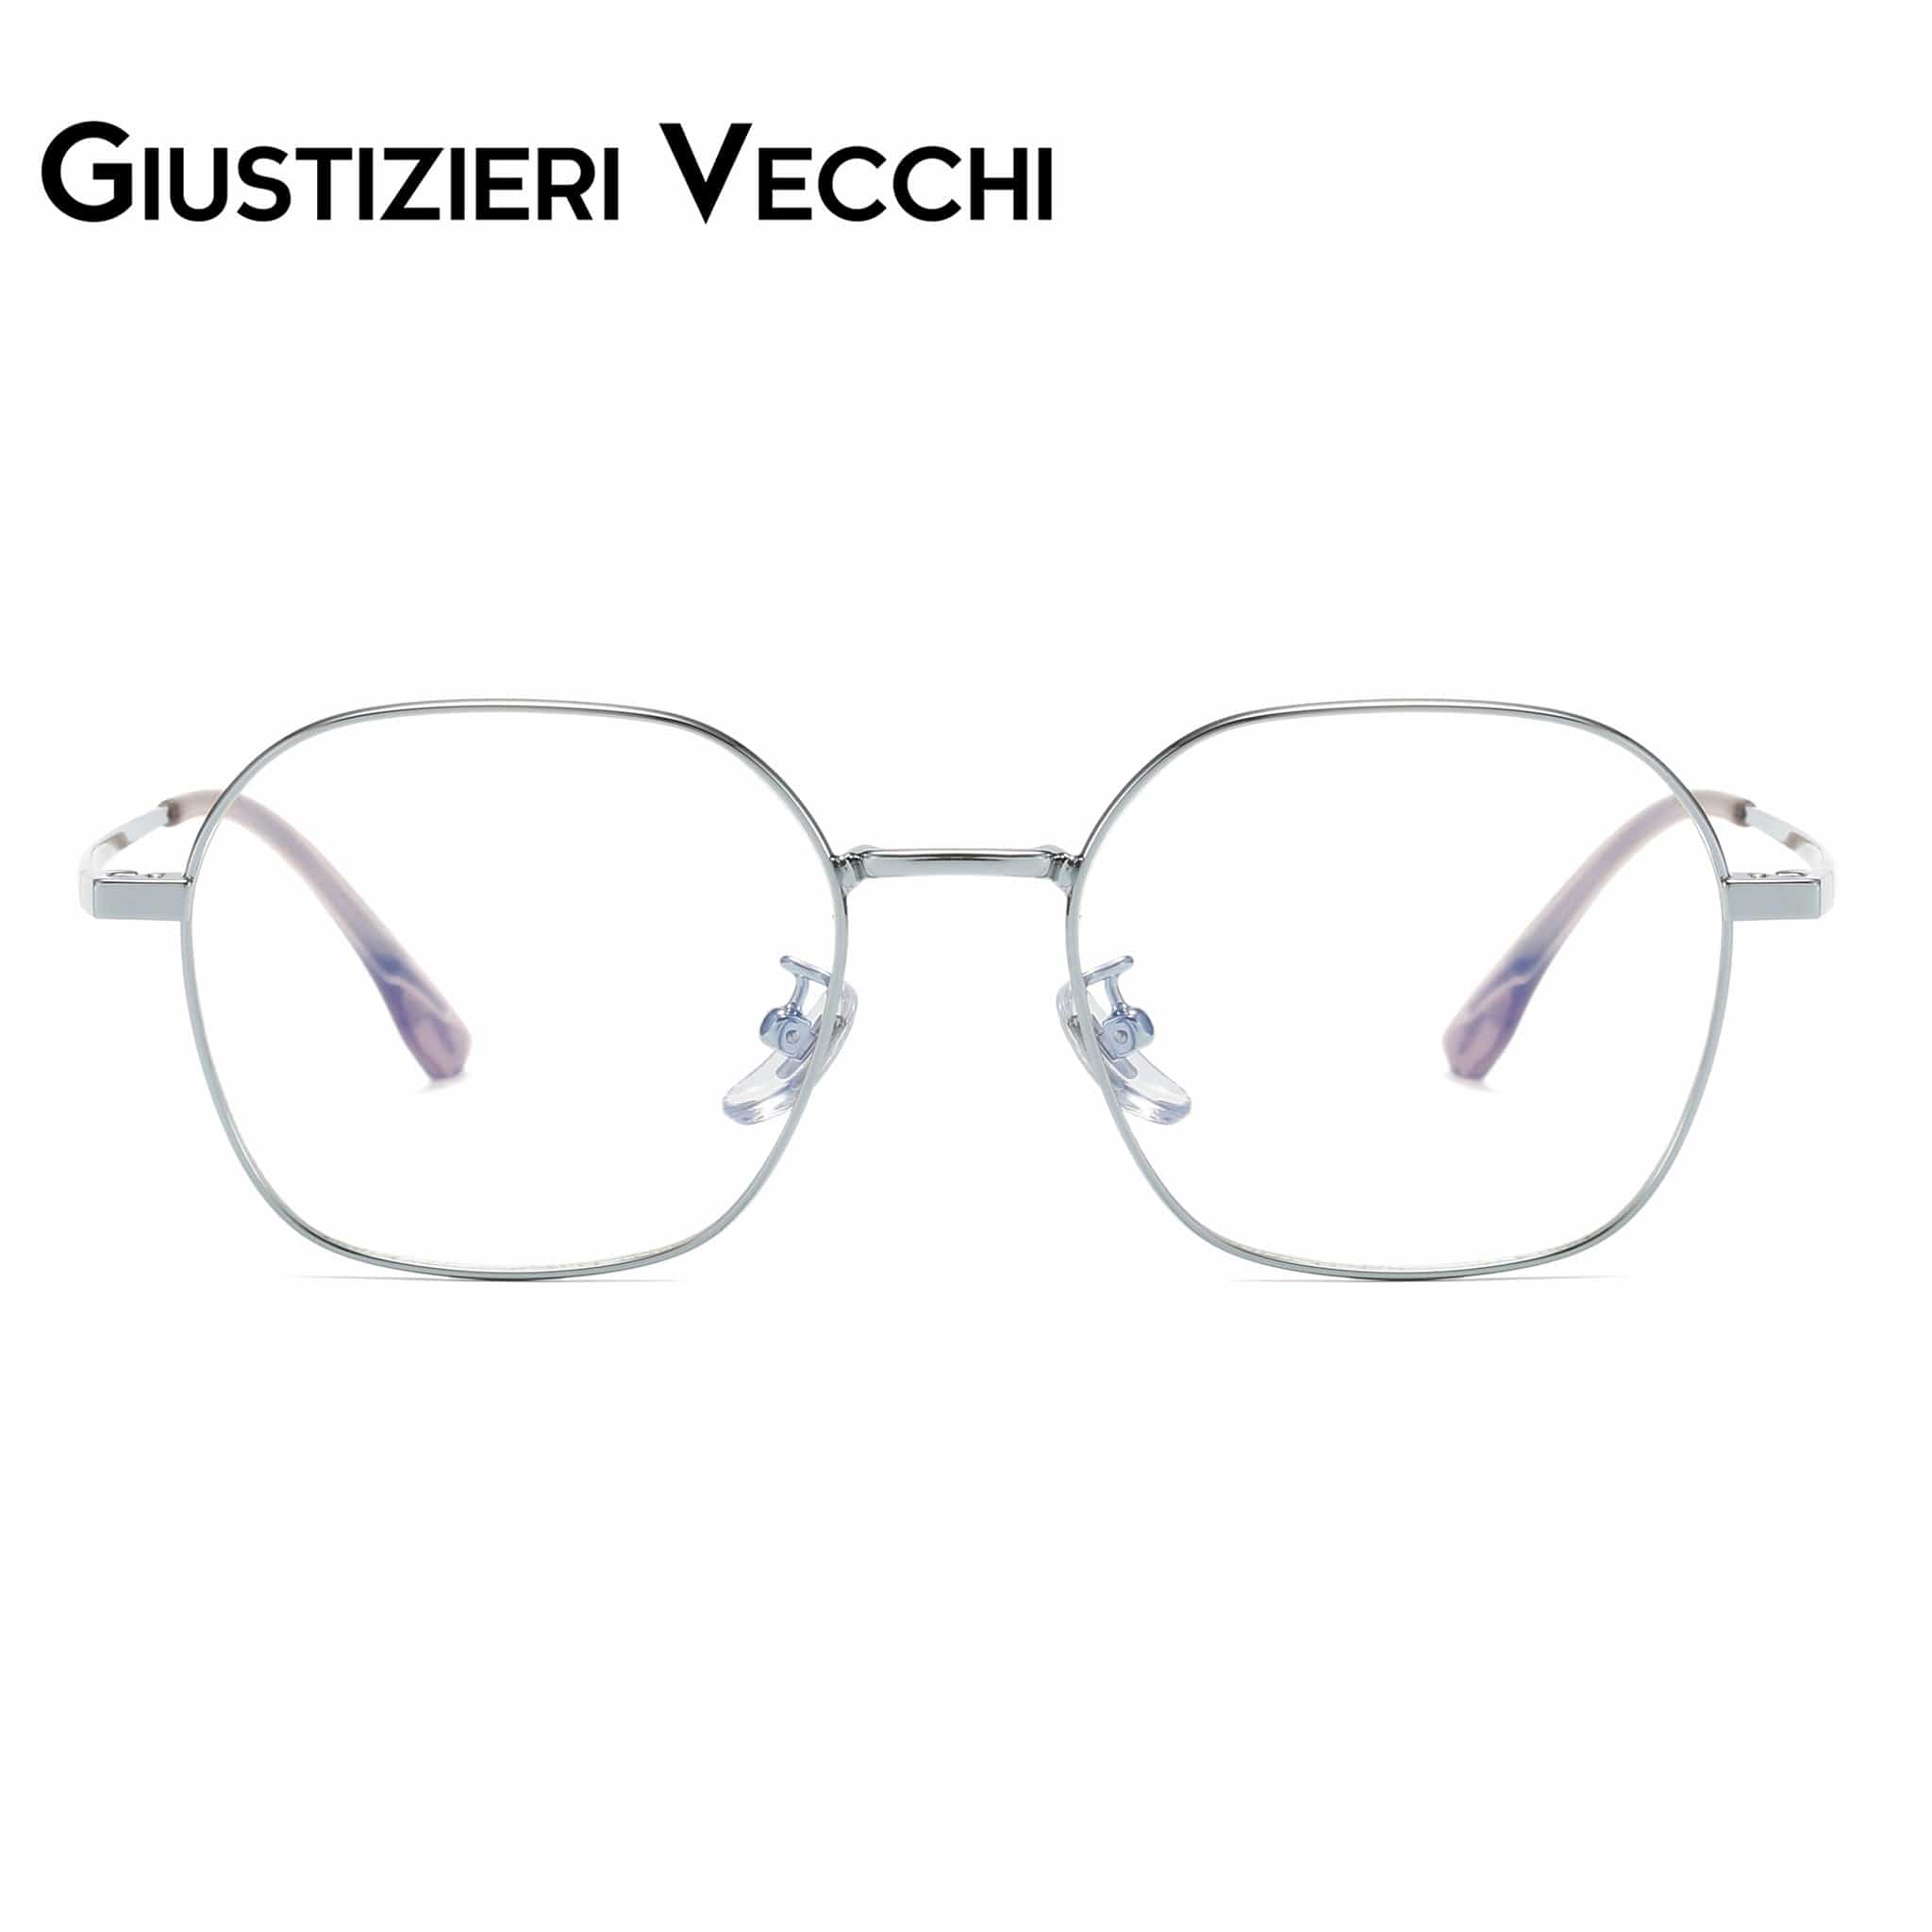 GIUSTIZIERI VECCHI Eyeglasses Small / Silver Mystic Mist Tre